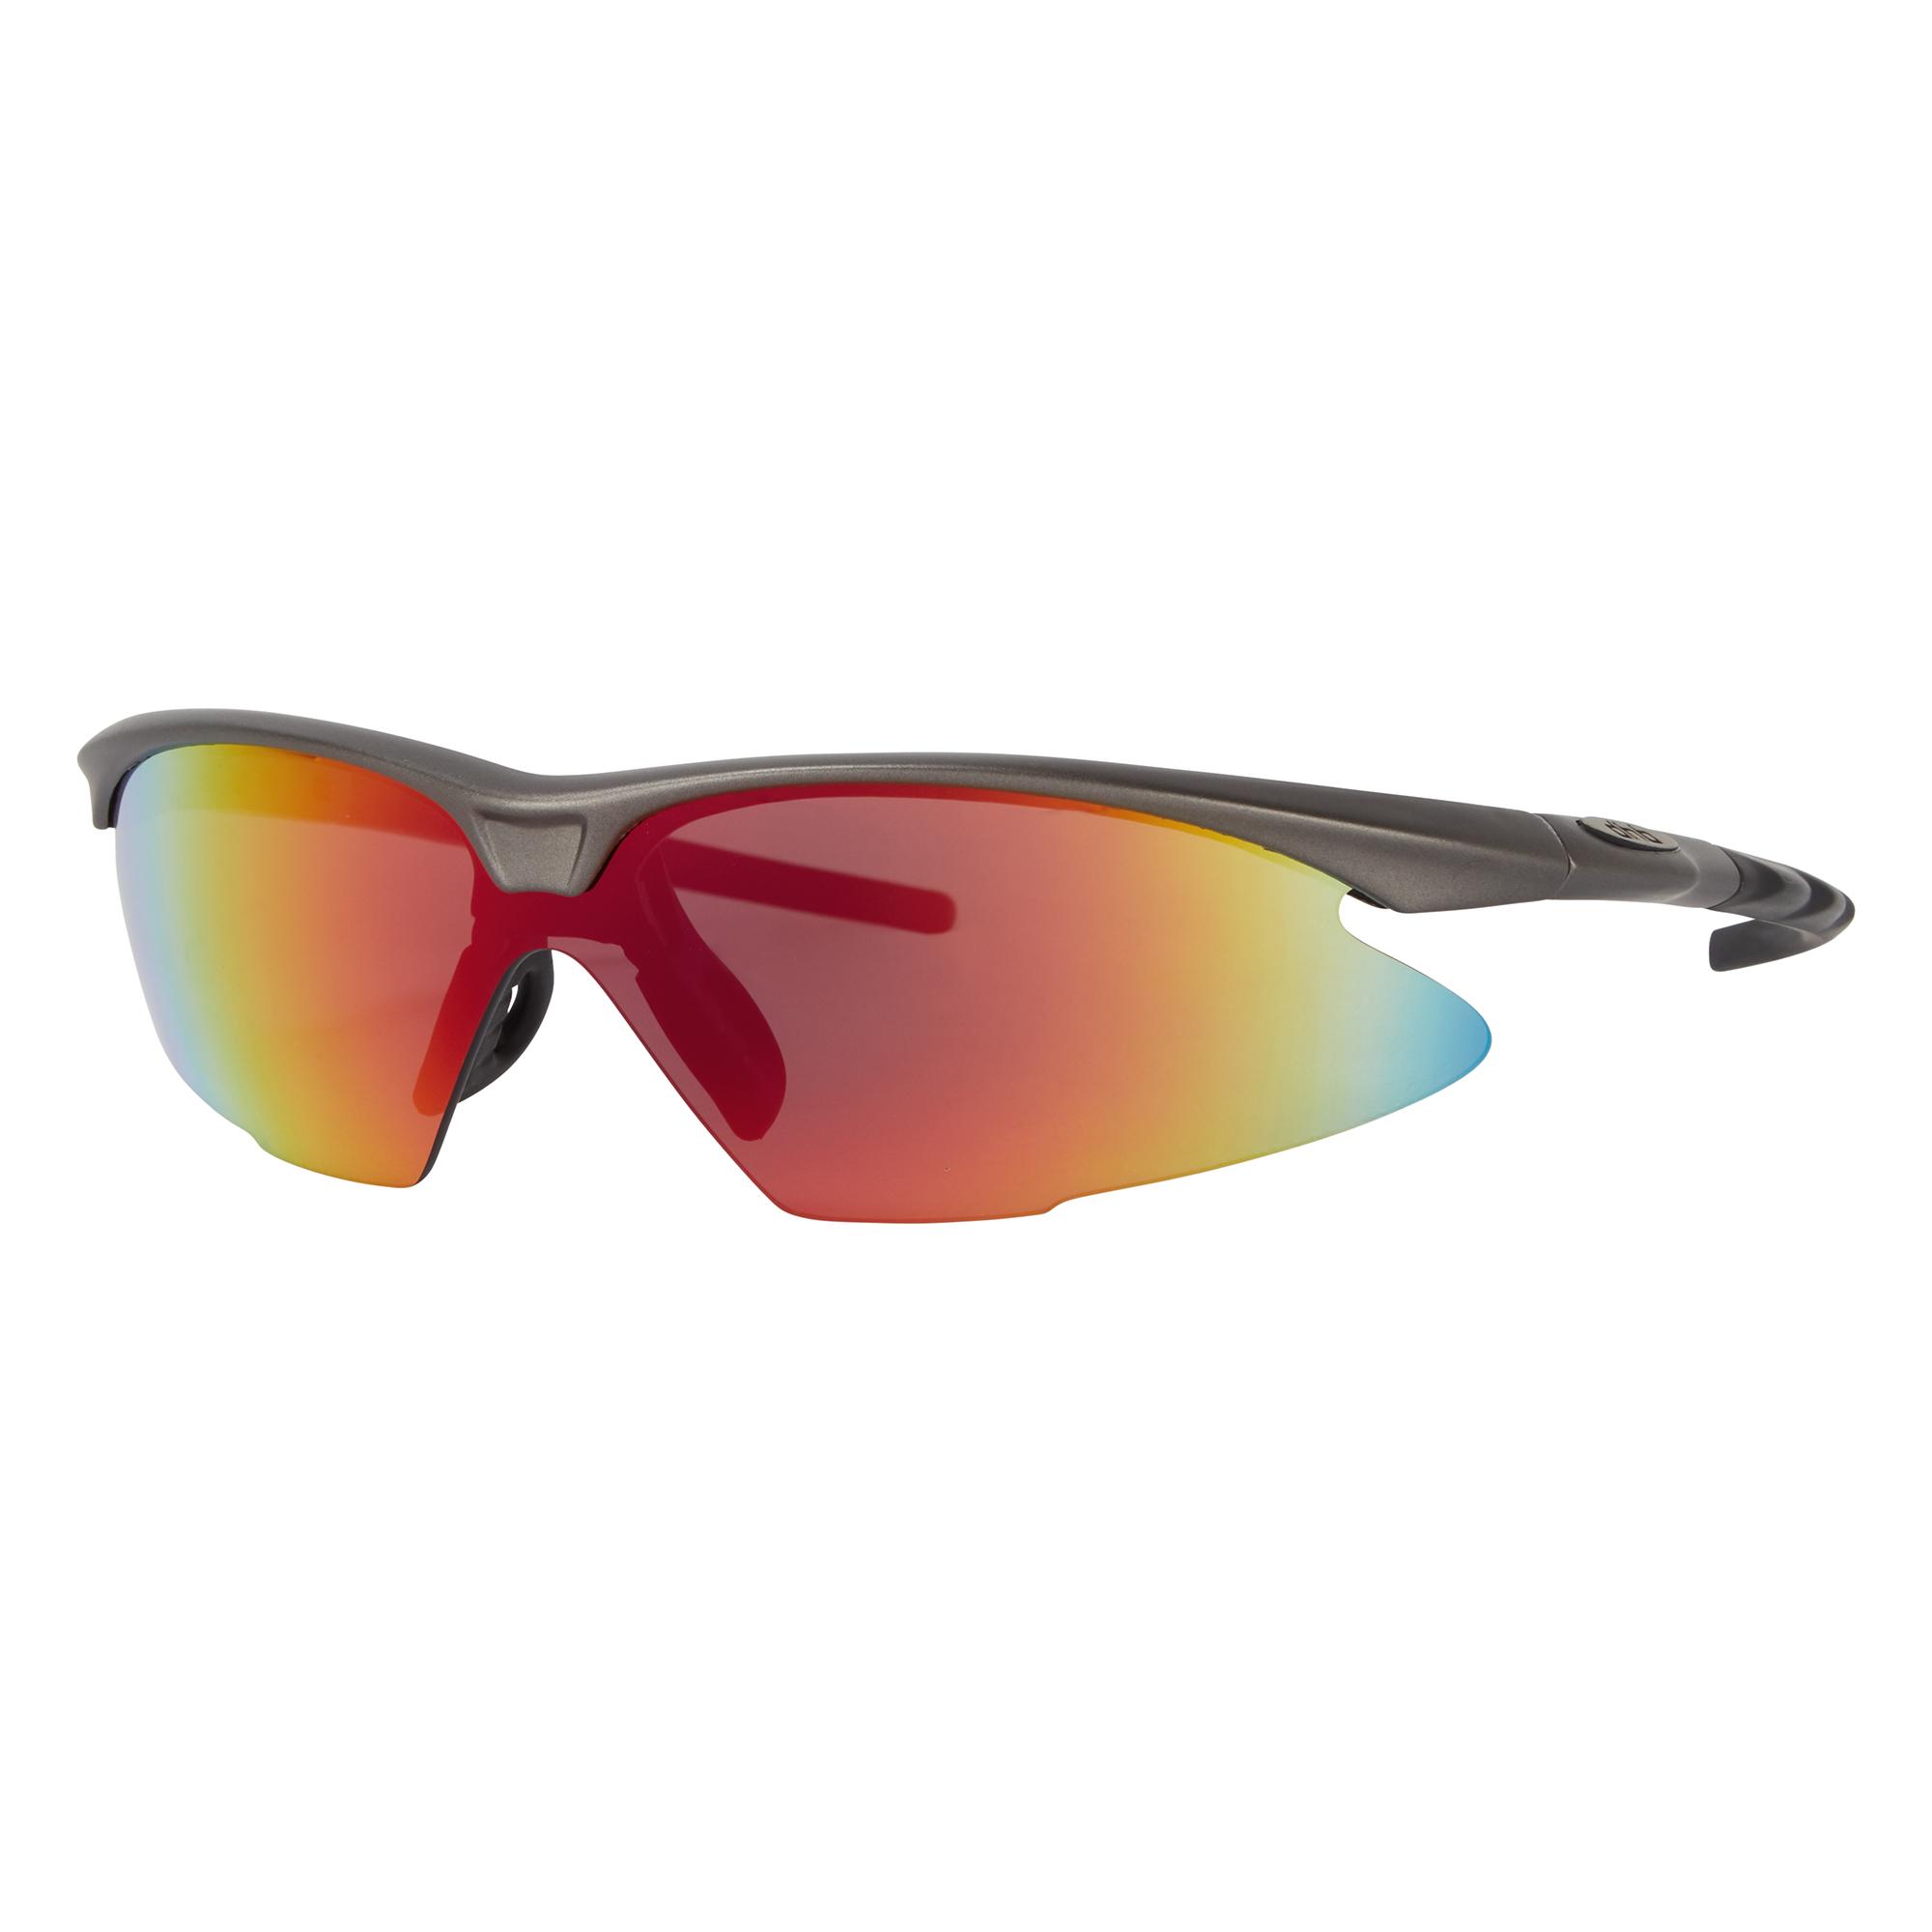 Dhb Pro Triple Lens Sunglasses  Grey